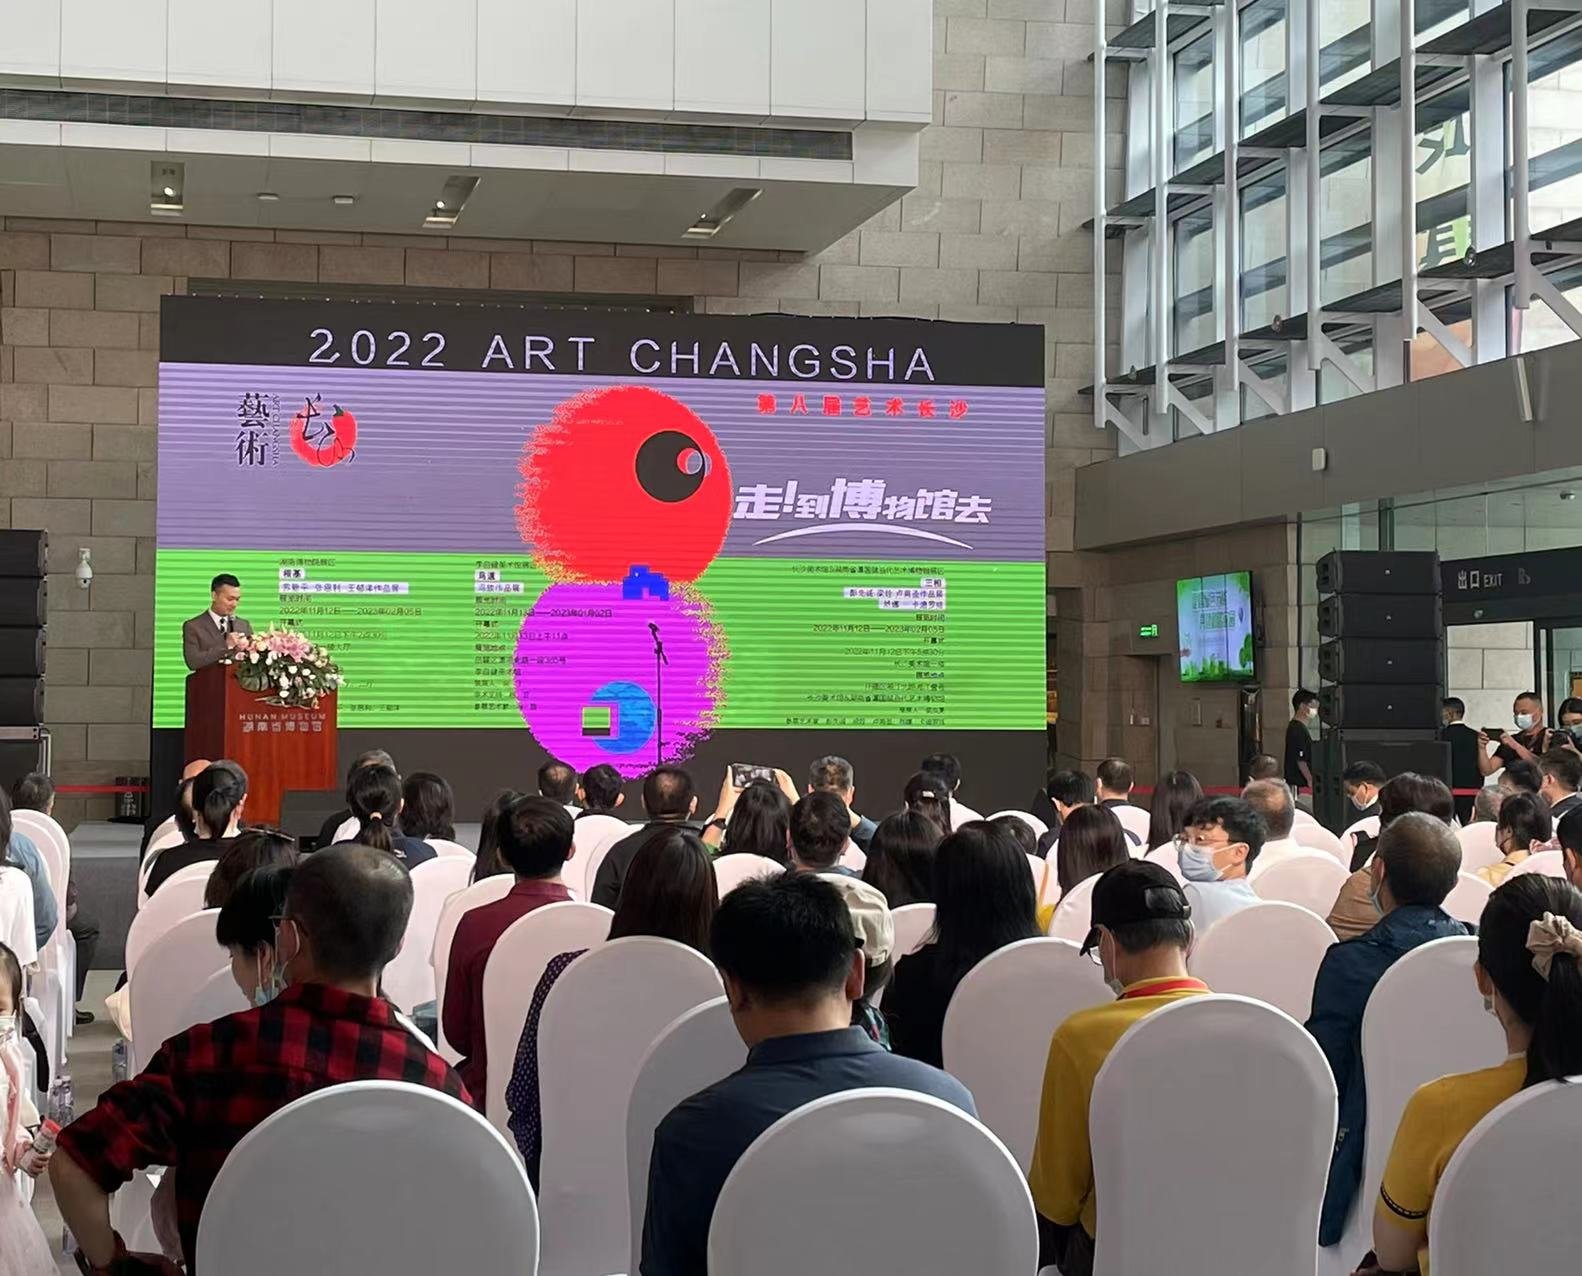 湖南博物院跨年大展“2022第八届艺术长沙”开幕